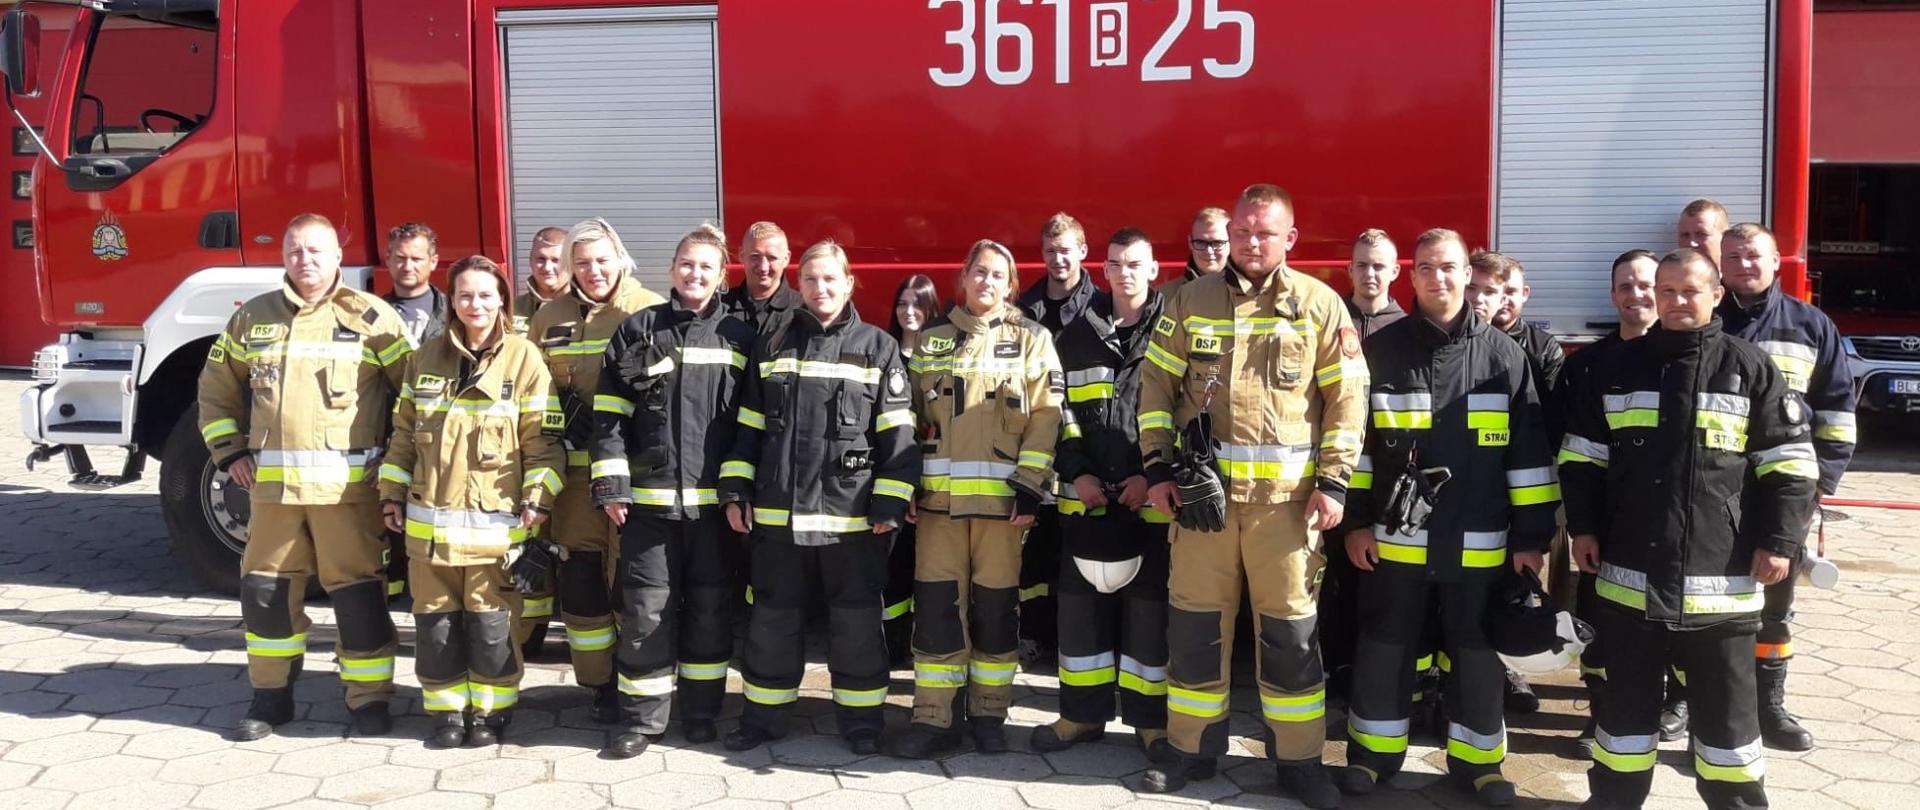 Zdjęcie grupowe uczestników szkolenia podstawowego OSP. Wszyscy strażacy ubrani w umundurowanie specjalne. W tle widoczny samochód pożarniczy.